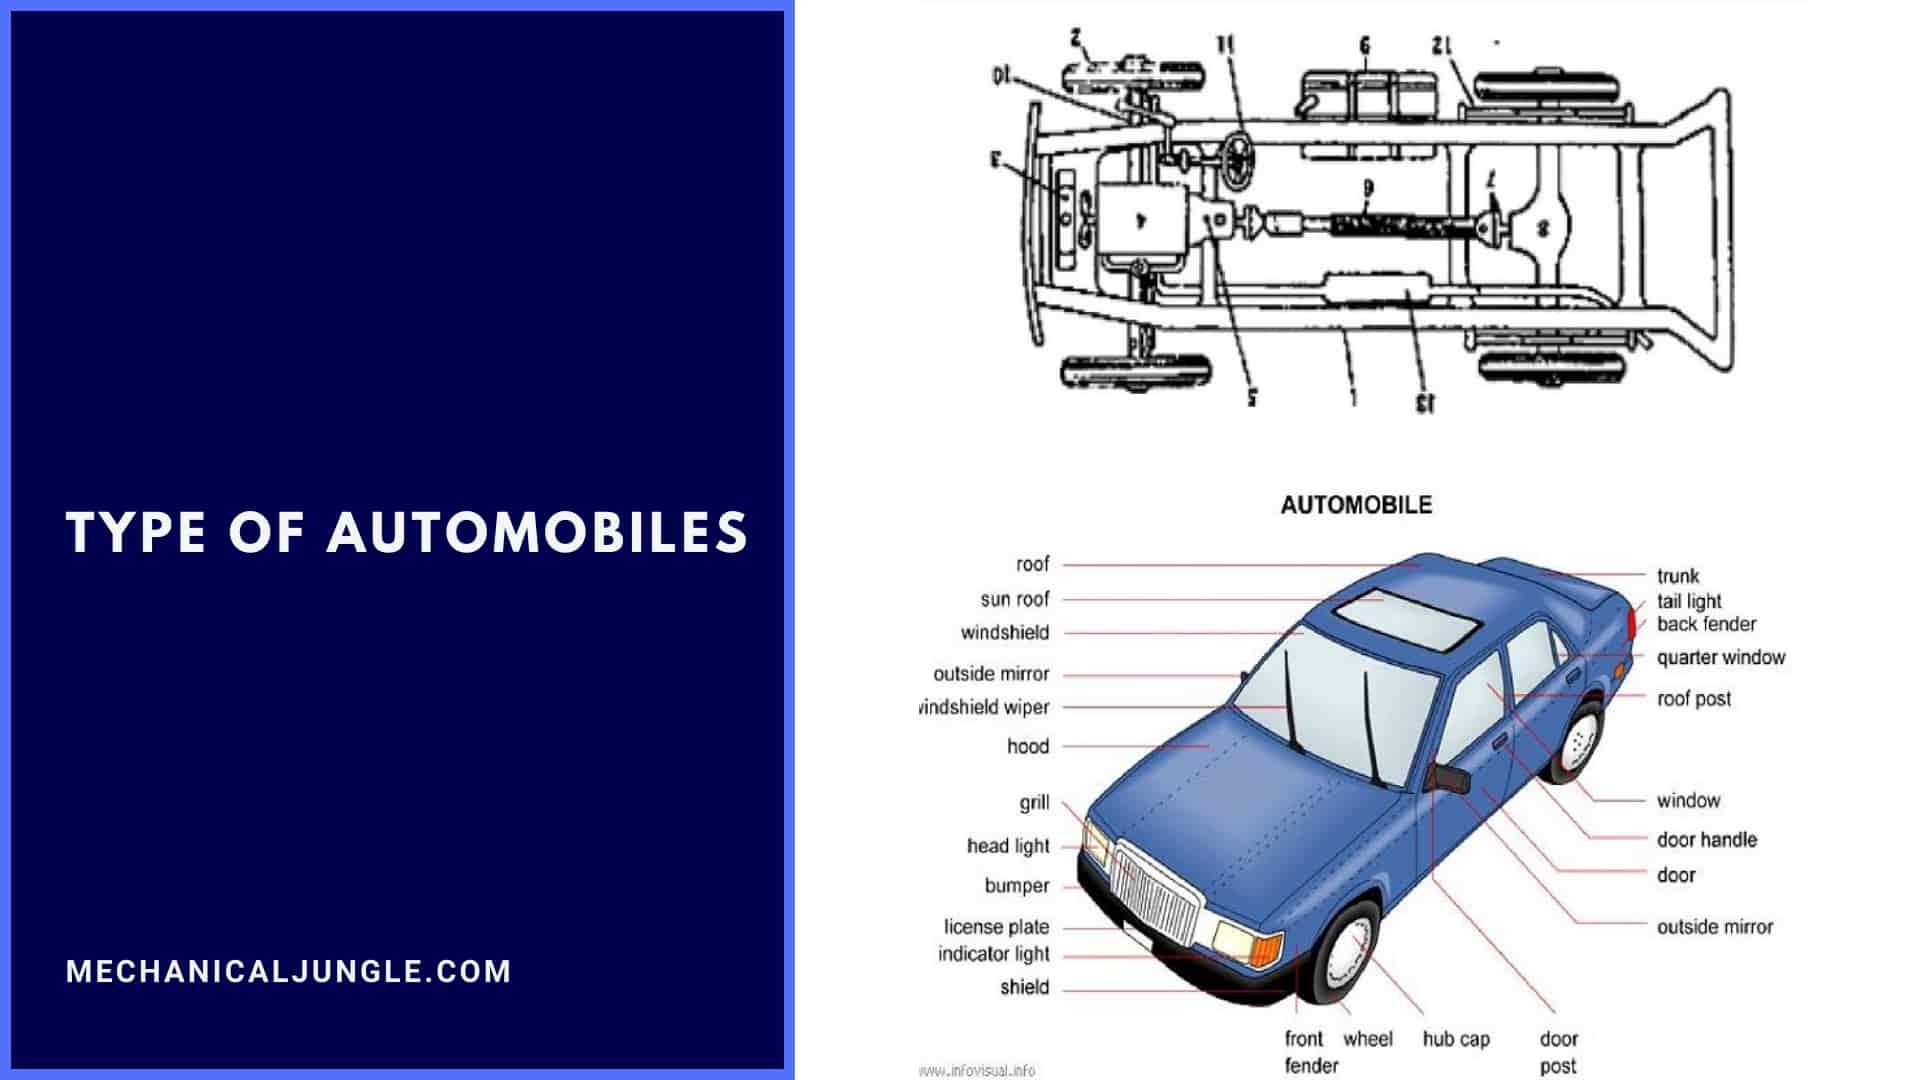 Type of Automobiles